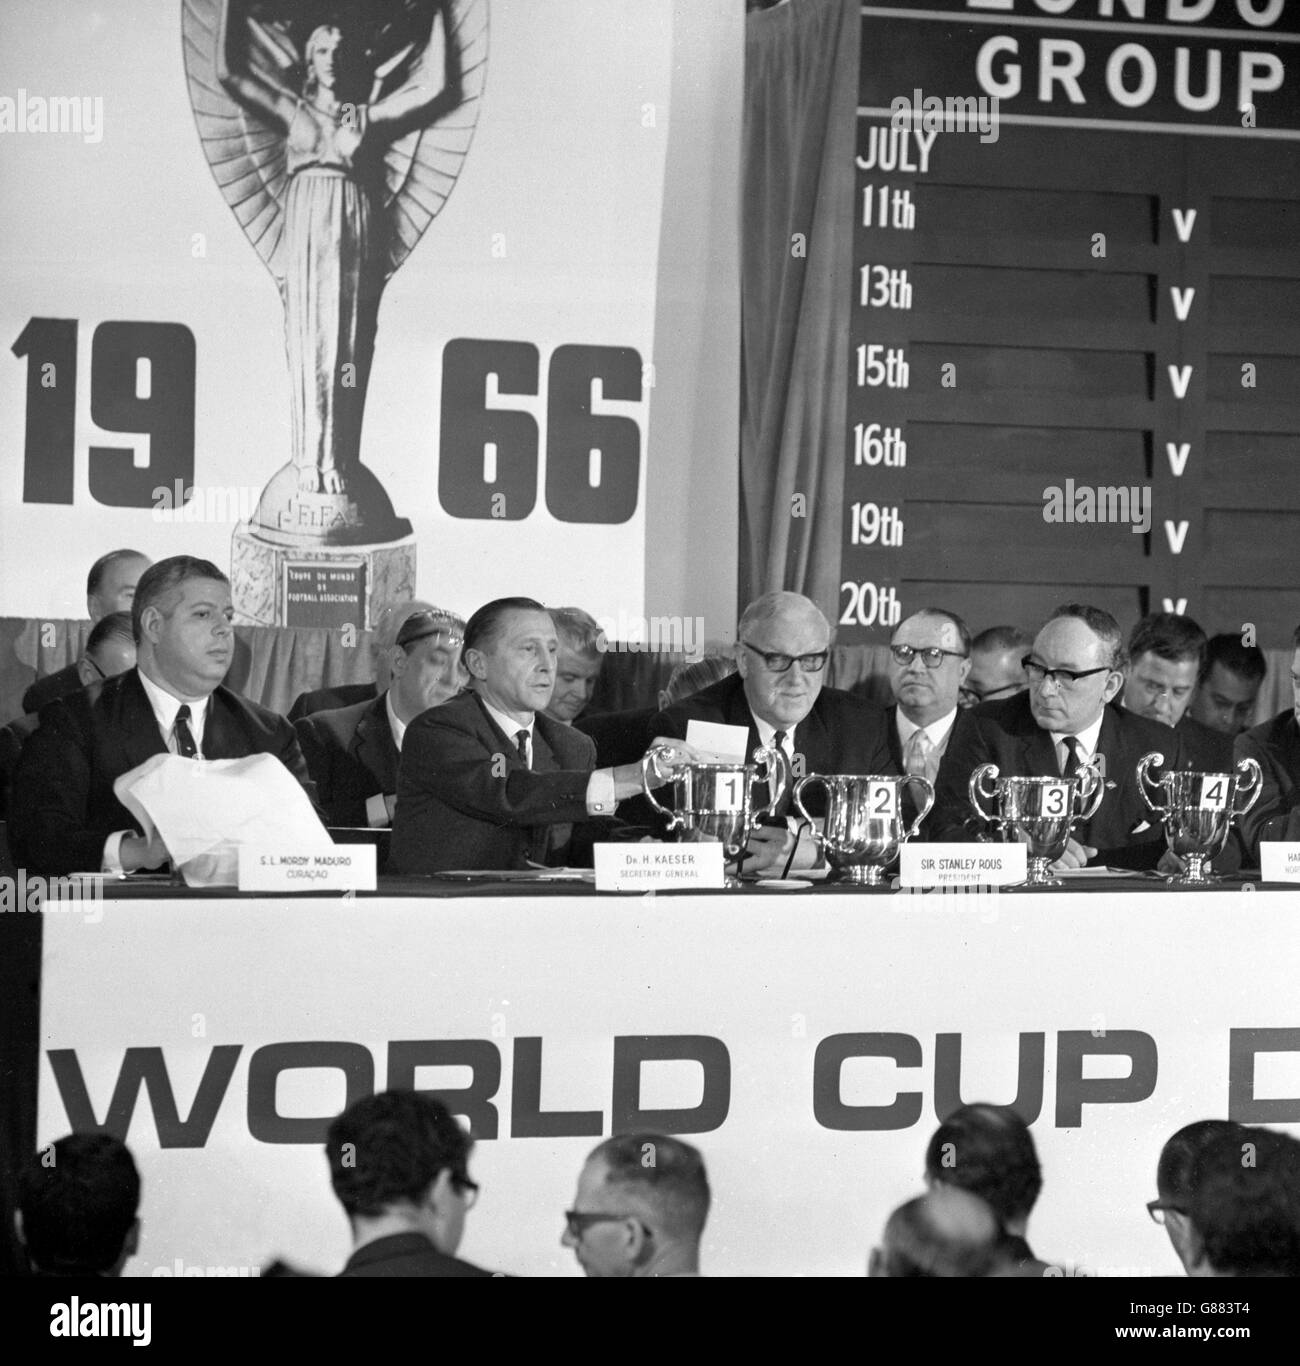 Il sorteggio per la Coppa del mondo viene effettuato presso il Royal Garden Hotel di Kensington. Il signor SL Mordy Maduro (a sinistra), membro Curacao del Comitato organizzatore della Coppa del mondo, è visto disegnare i documenti da una tazza coperta di asciugamani. Al tavolo ci sono anche Helmut Kaeser, Segretario Generale della FIFA, Sir Stanley Rous, Presidente della FIFA, Harry H Cavan, Membro del Comitato Organizzatore dell'Irlanda del Nord, e del conte di Harewood. Foto Stock